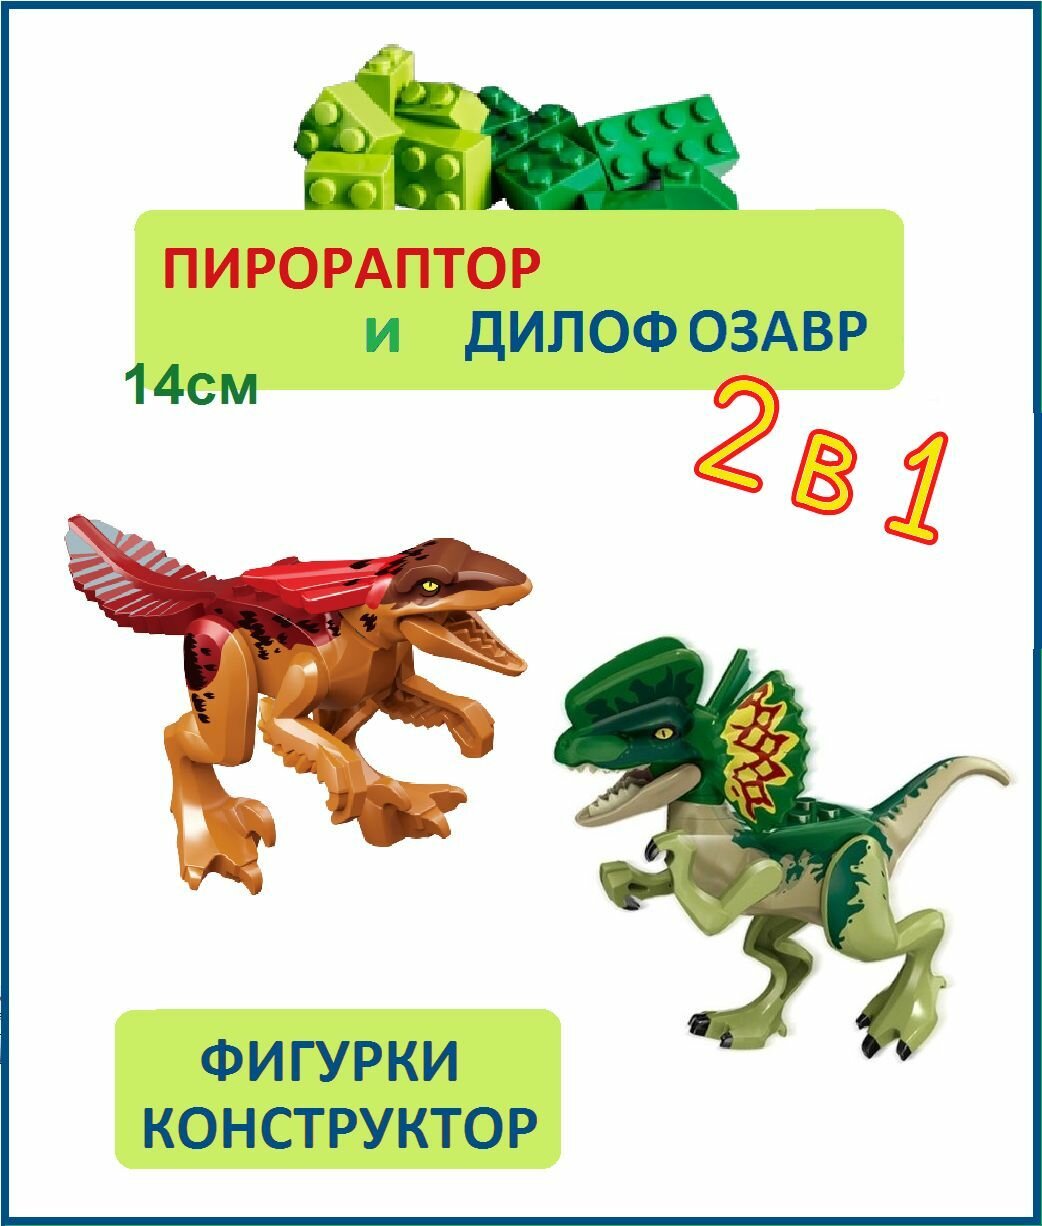 Дилофозавр и Пирораптор, 2 шт, фигурки конструктор, Парк Юрского периода